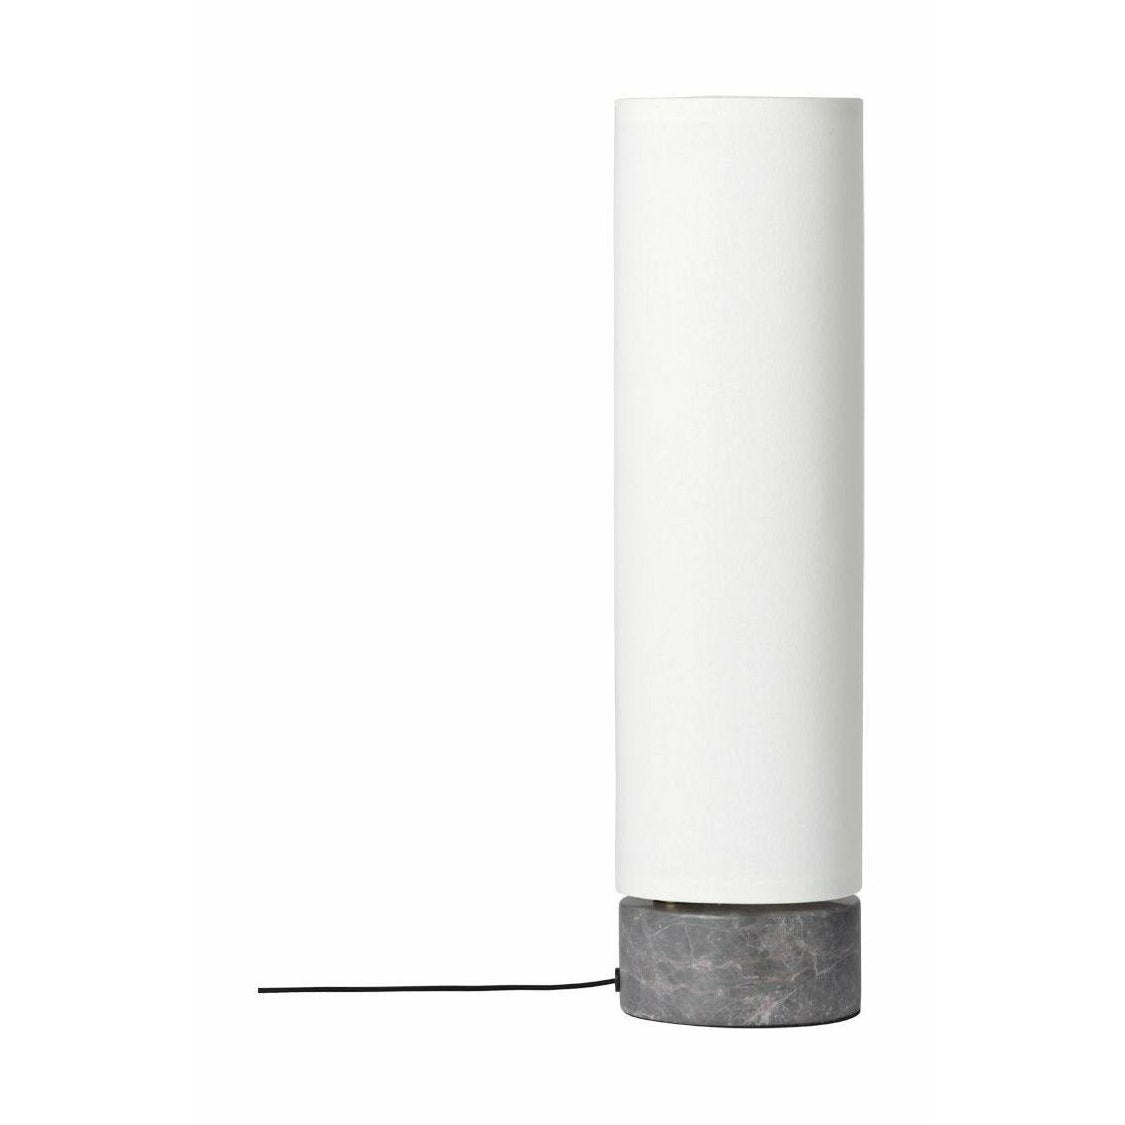 Gubi ungebundener Tischlampe Øx H 12x45, weiß